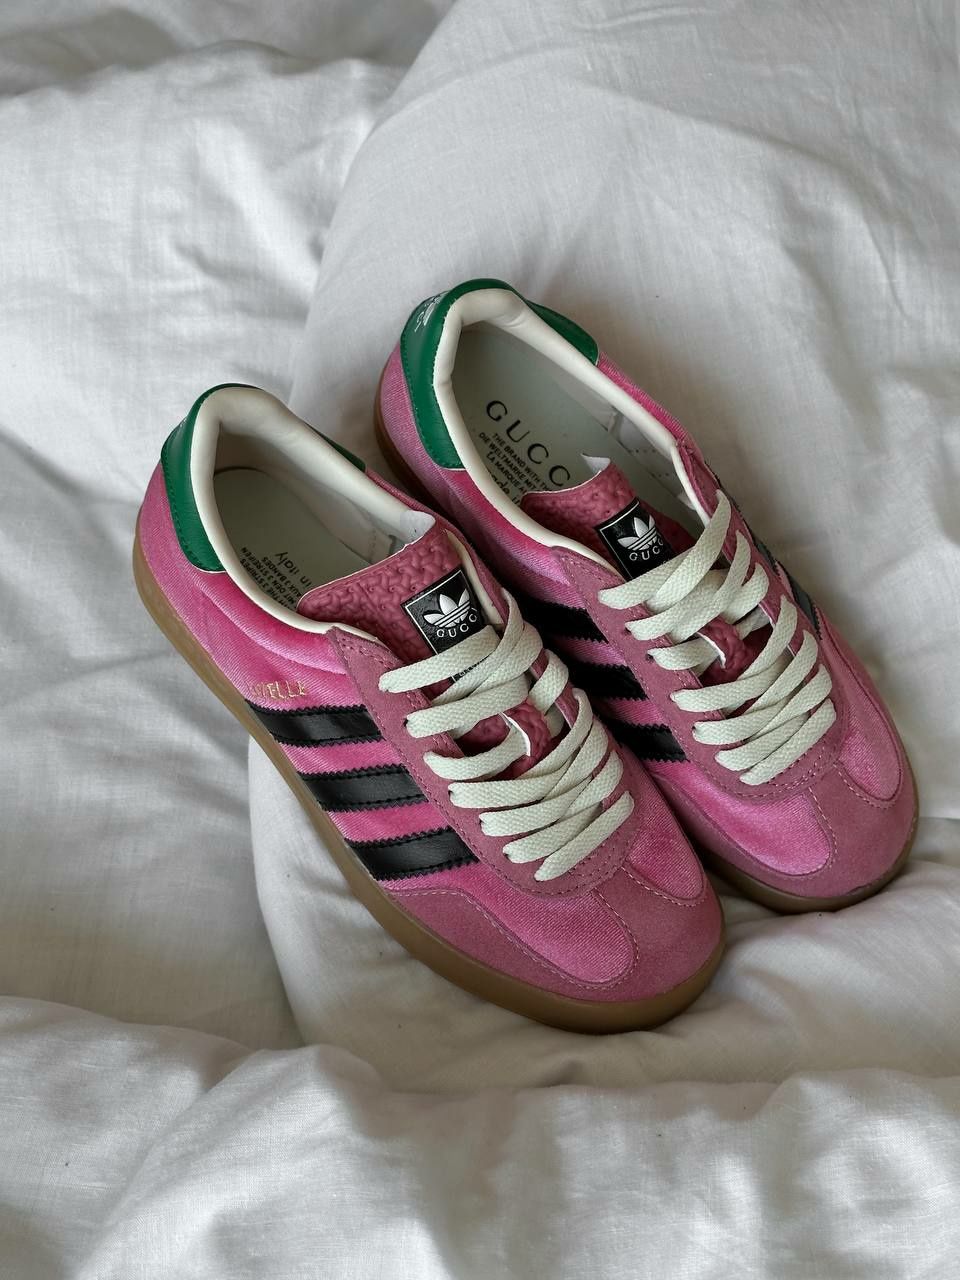 Adidas Gazelle x Gucci Pink Green